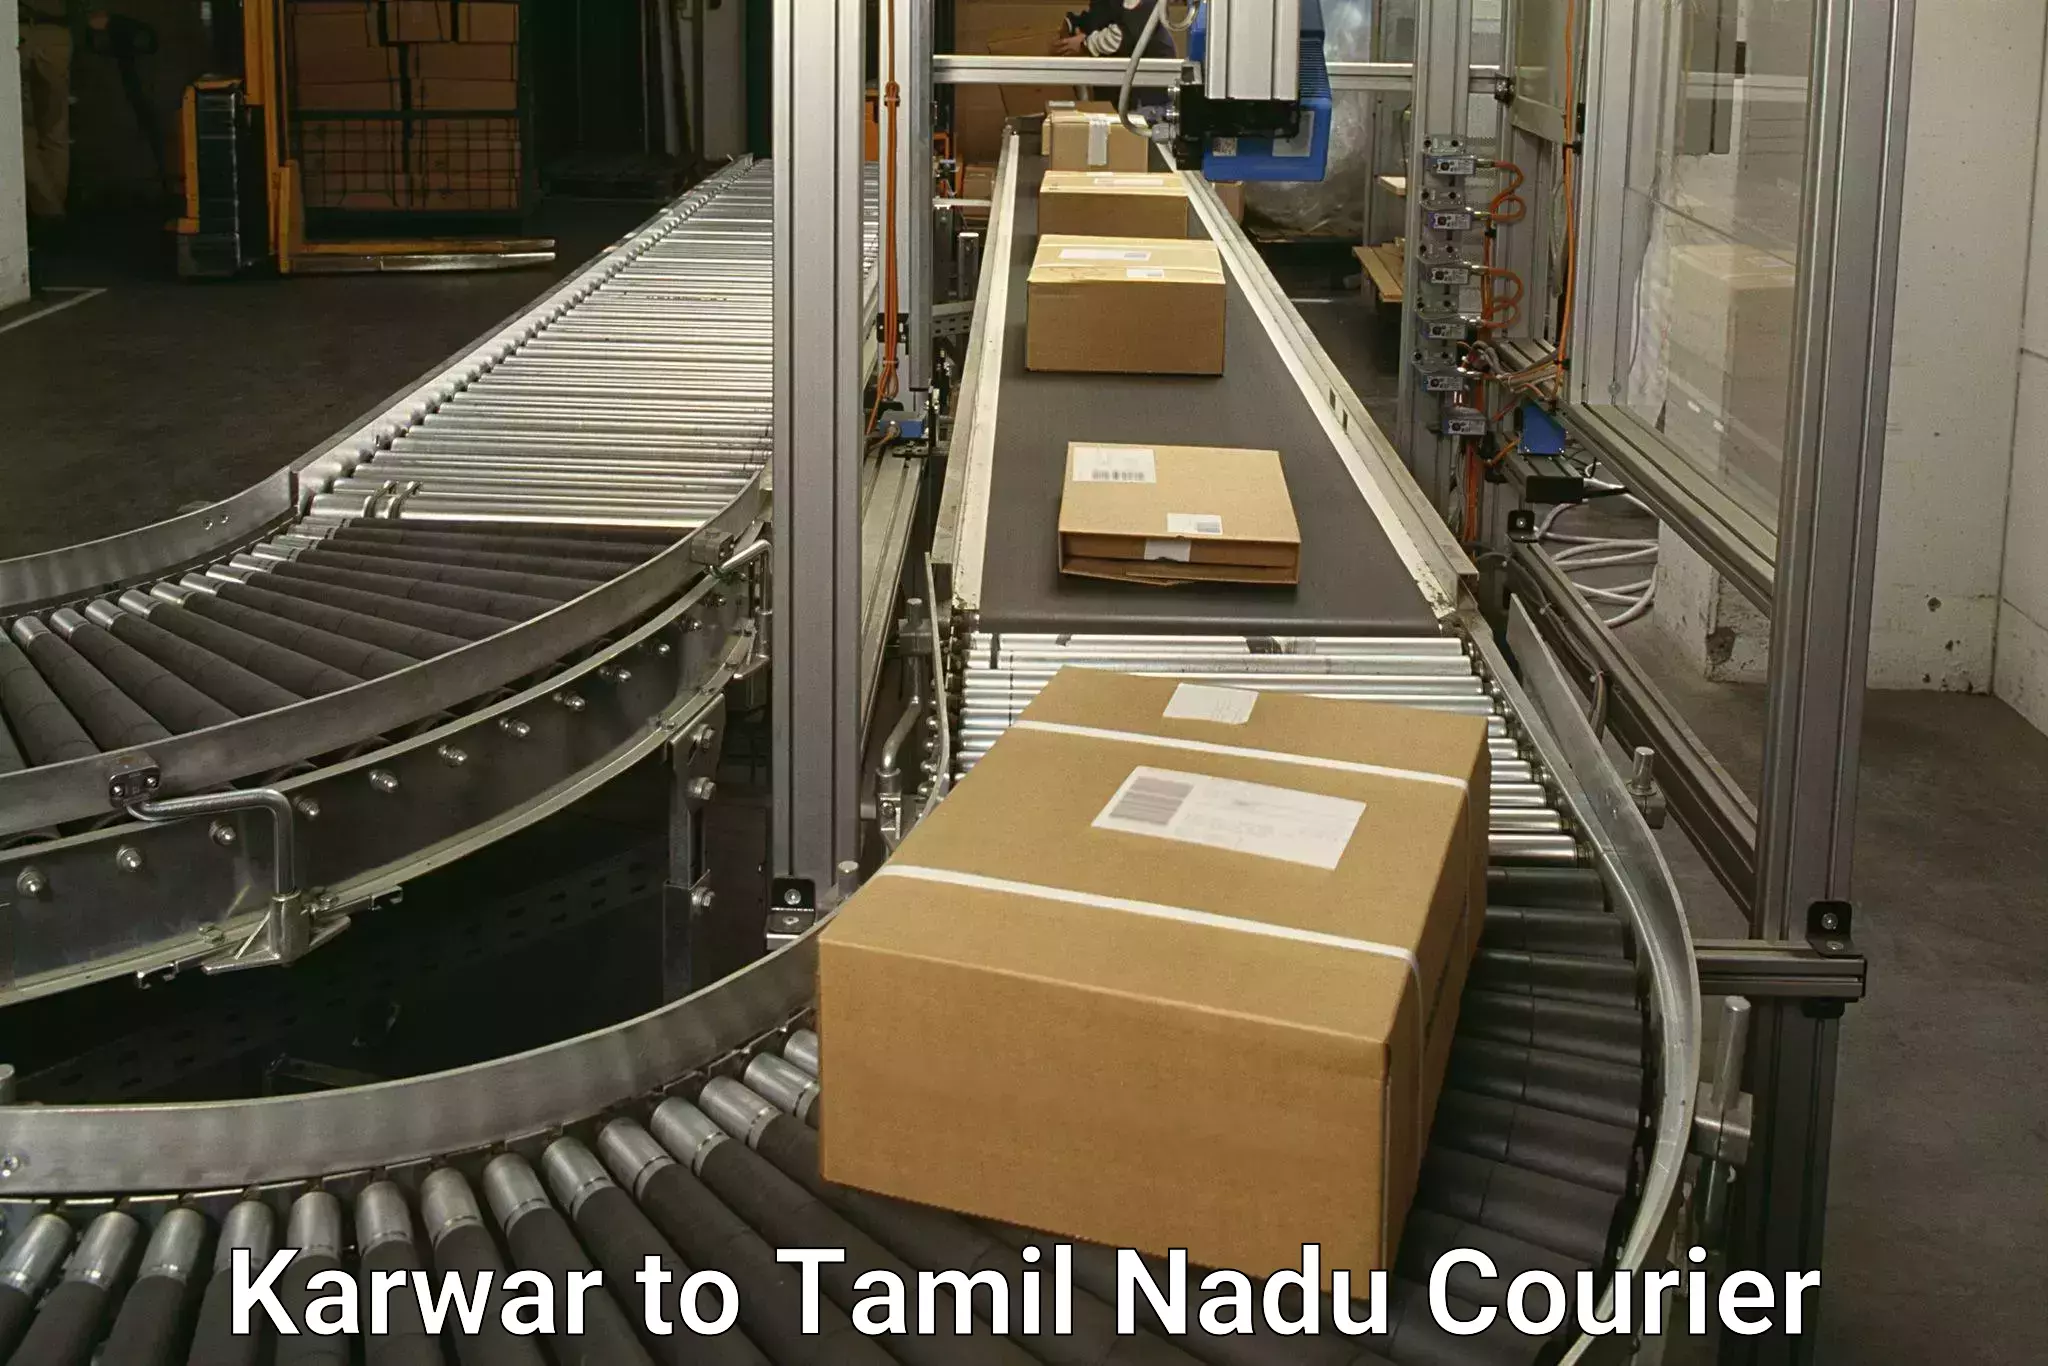 Nationwide shipping capabilities Karwar to Kallakurichi